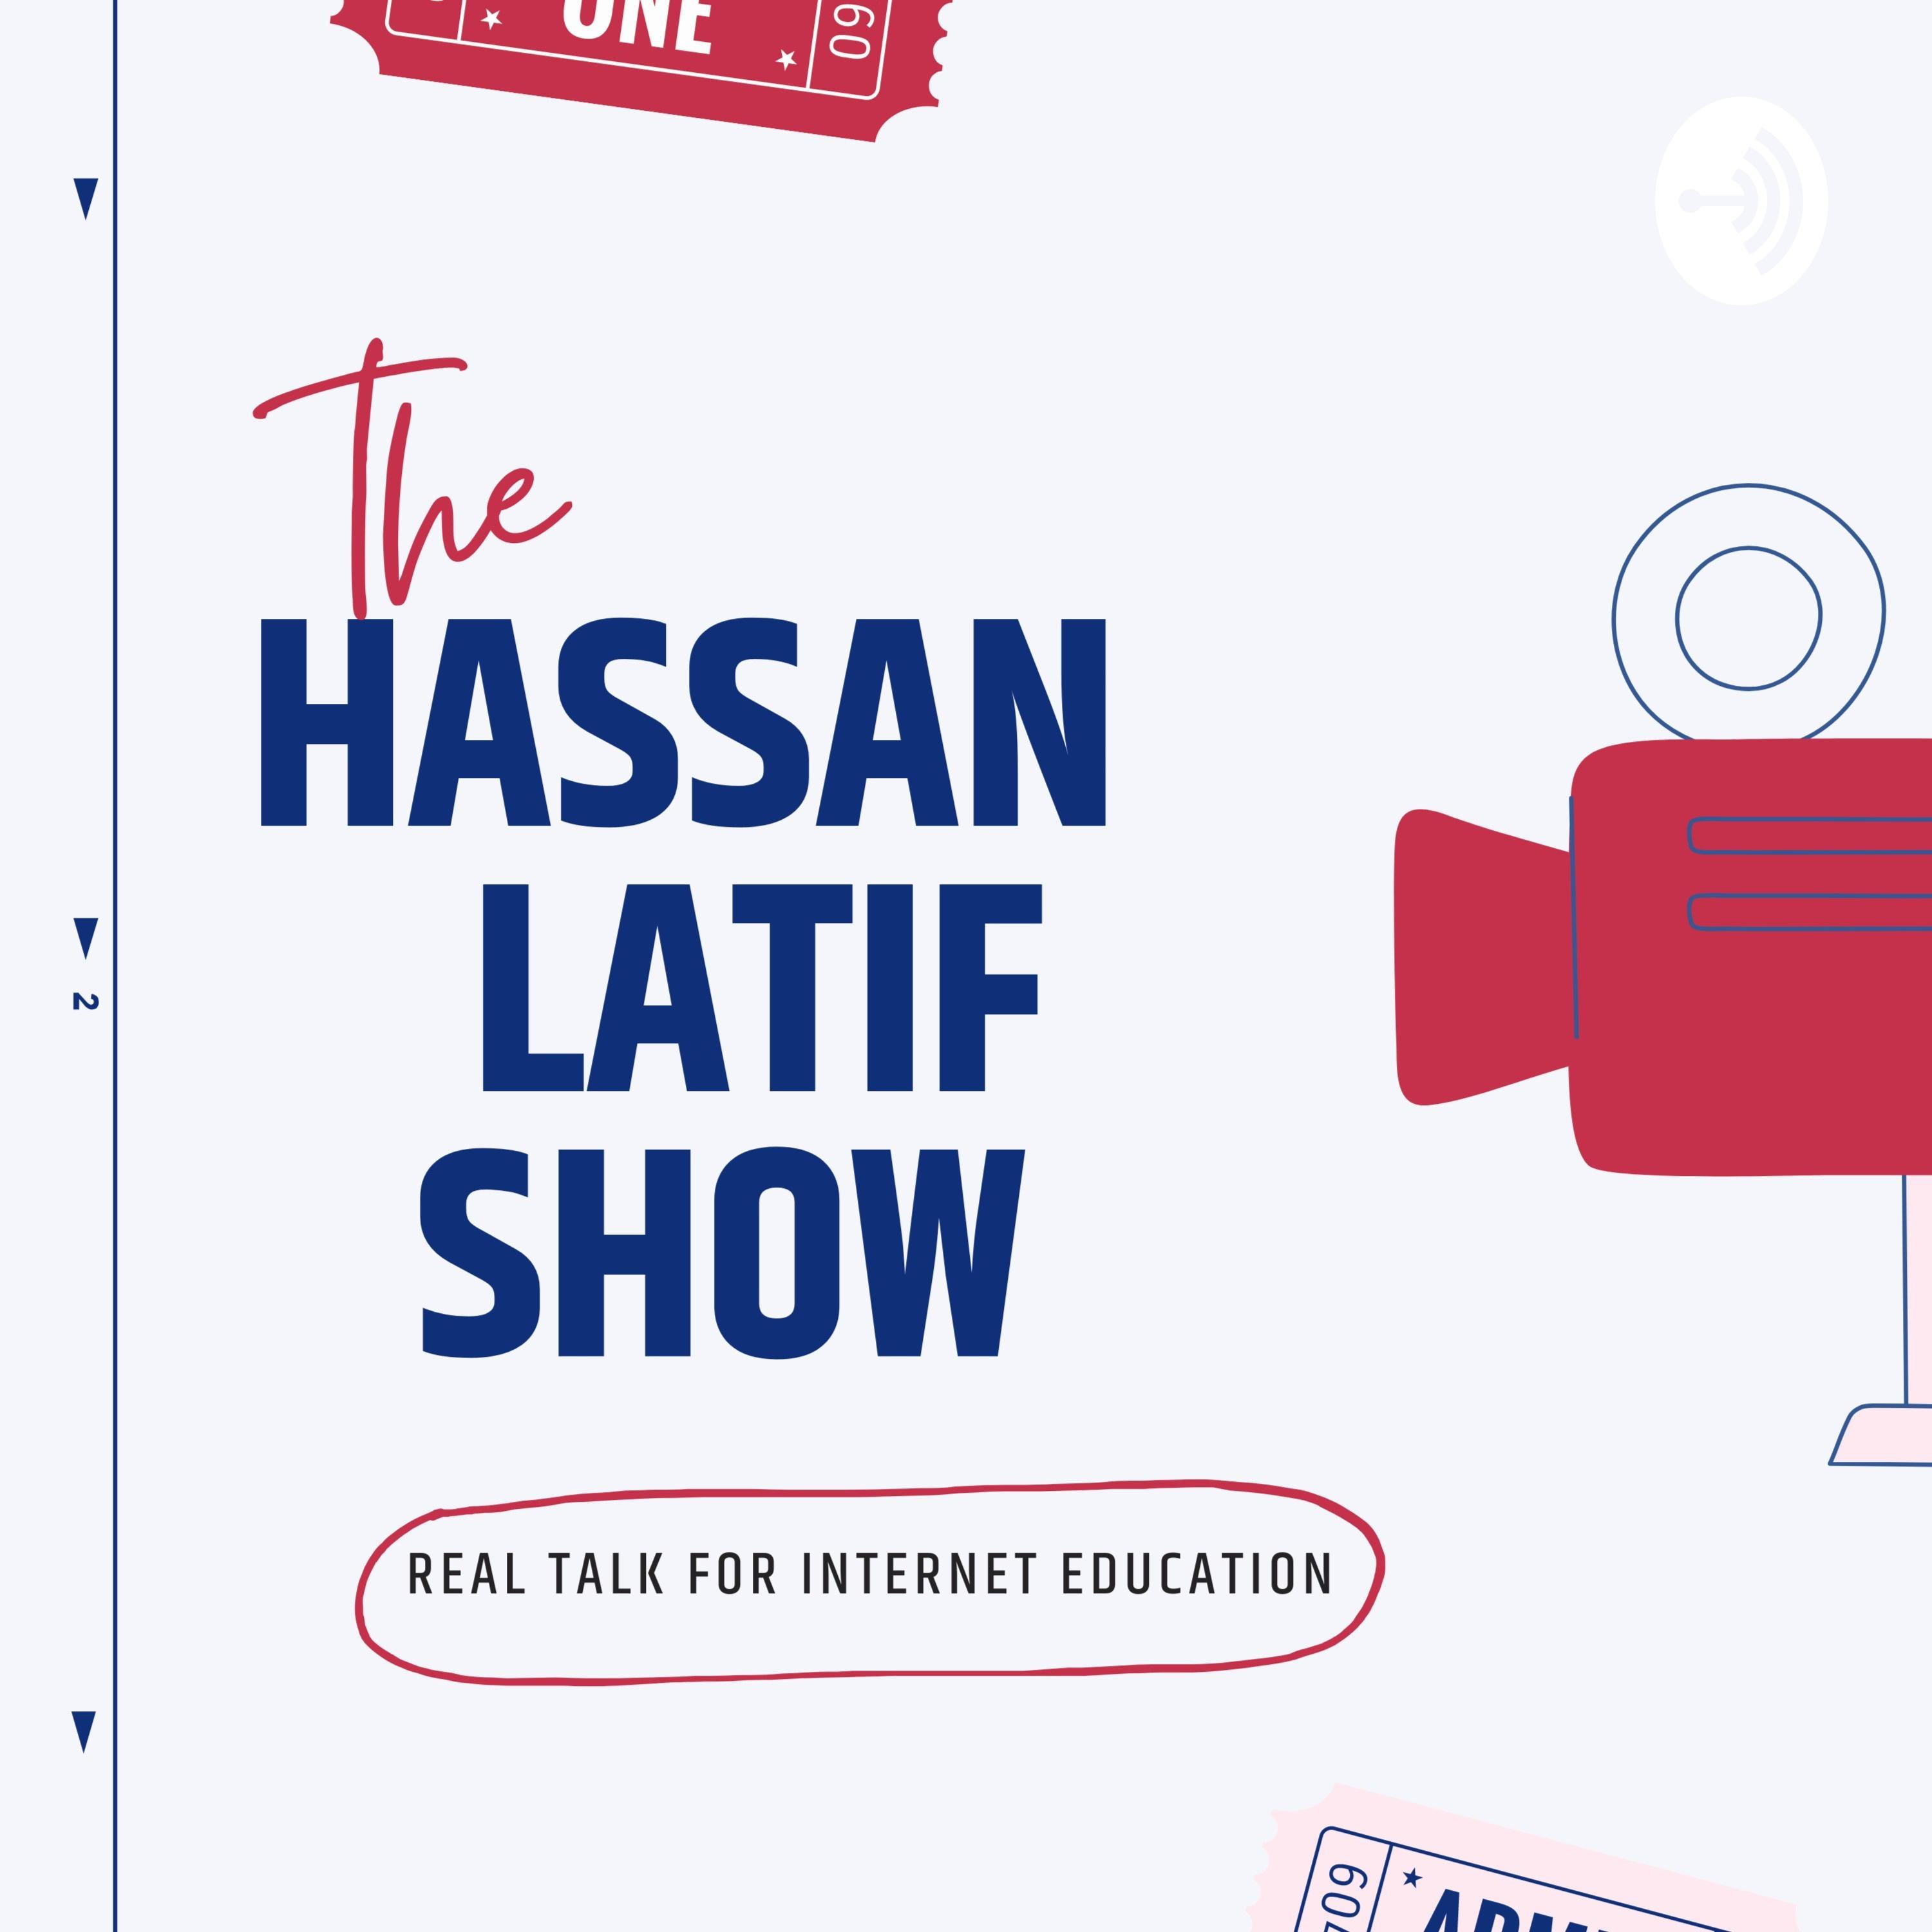 Hassan latif show